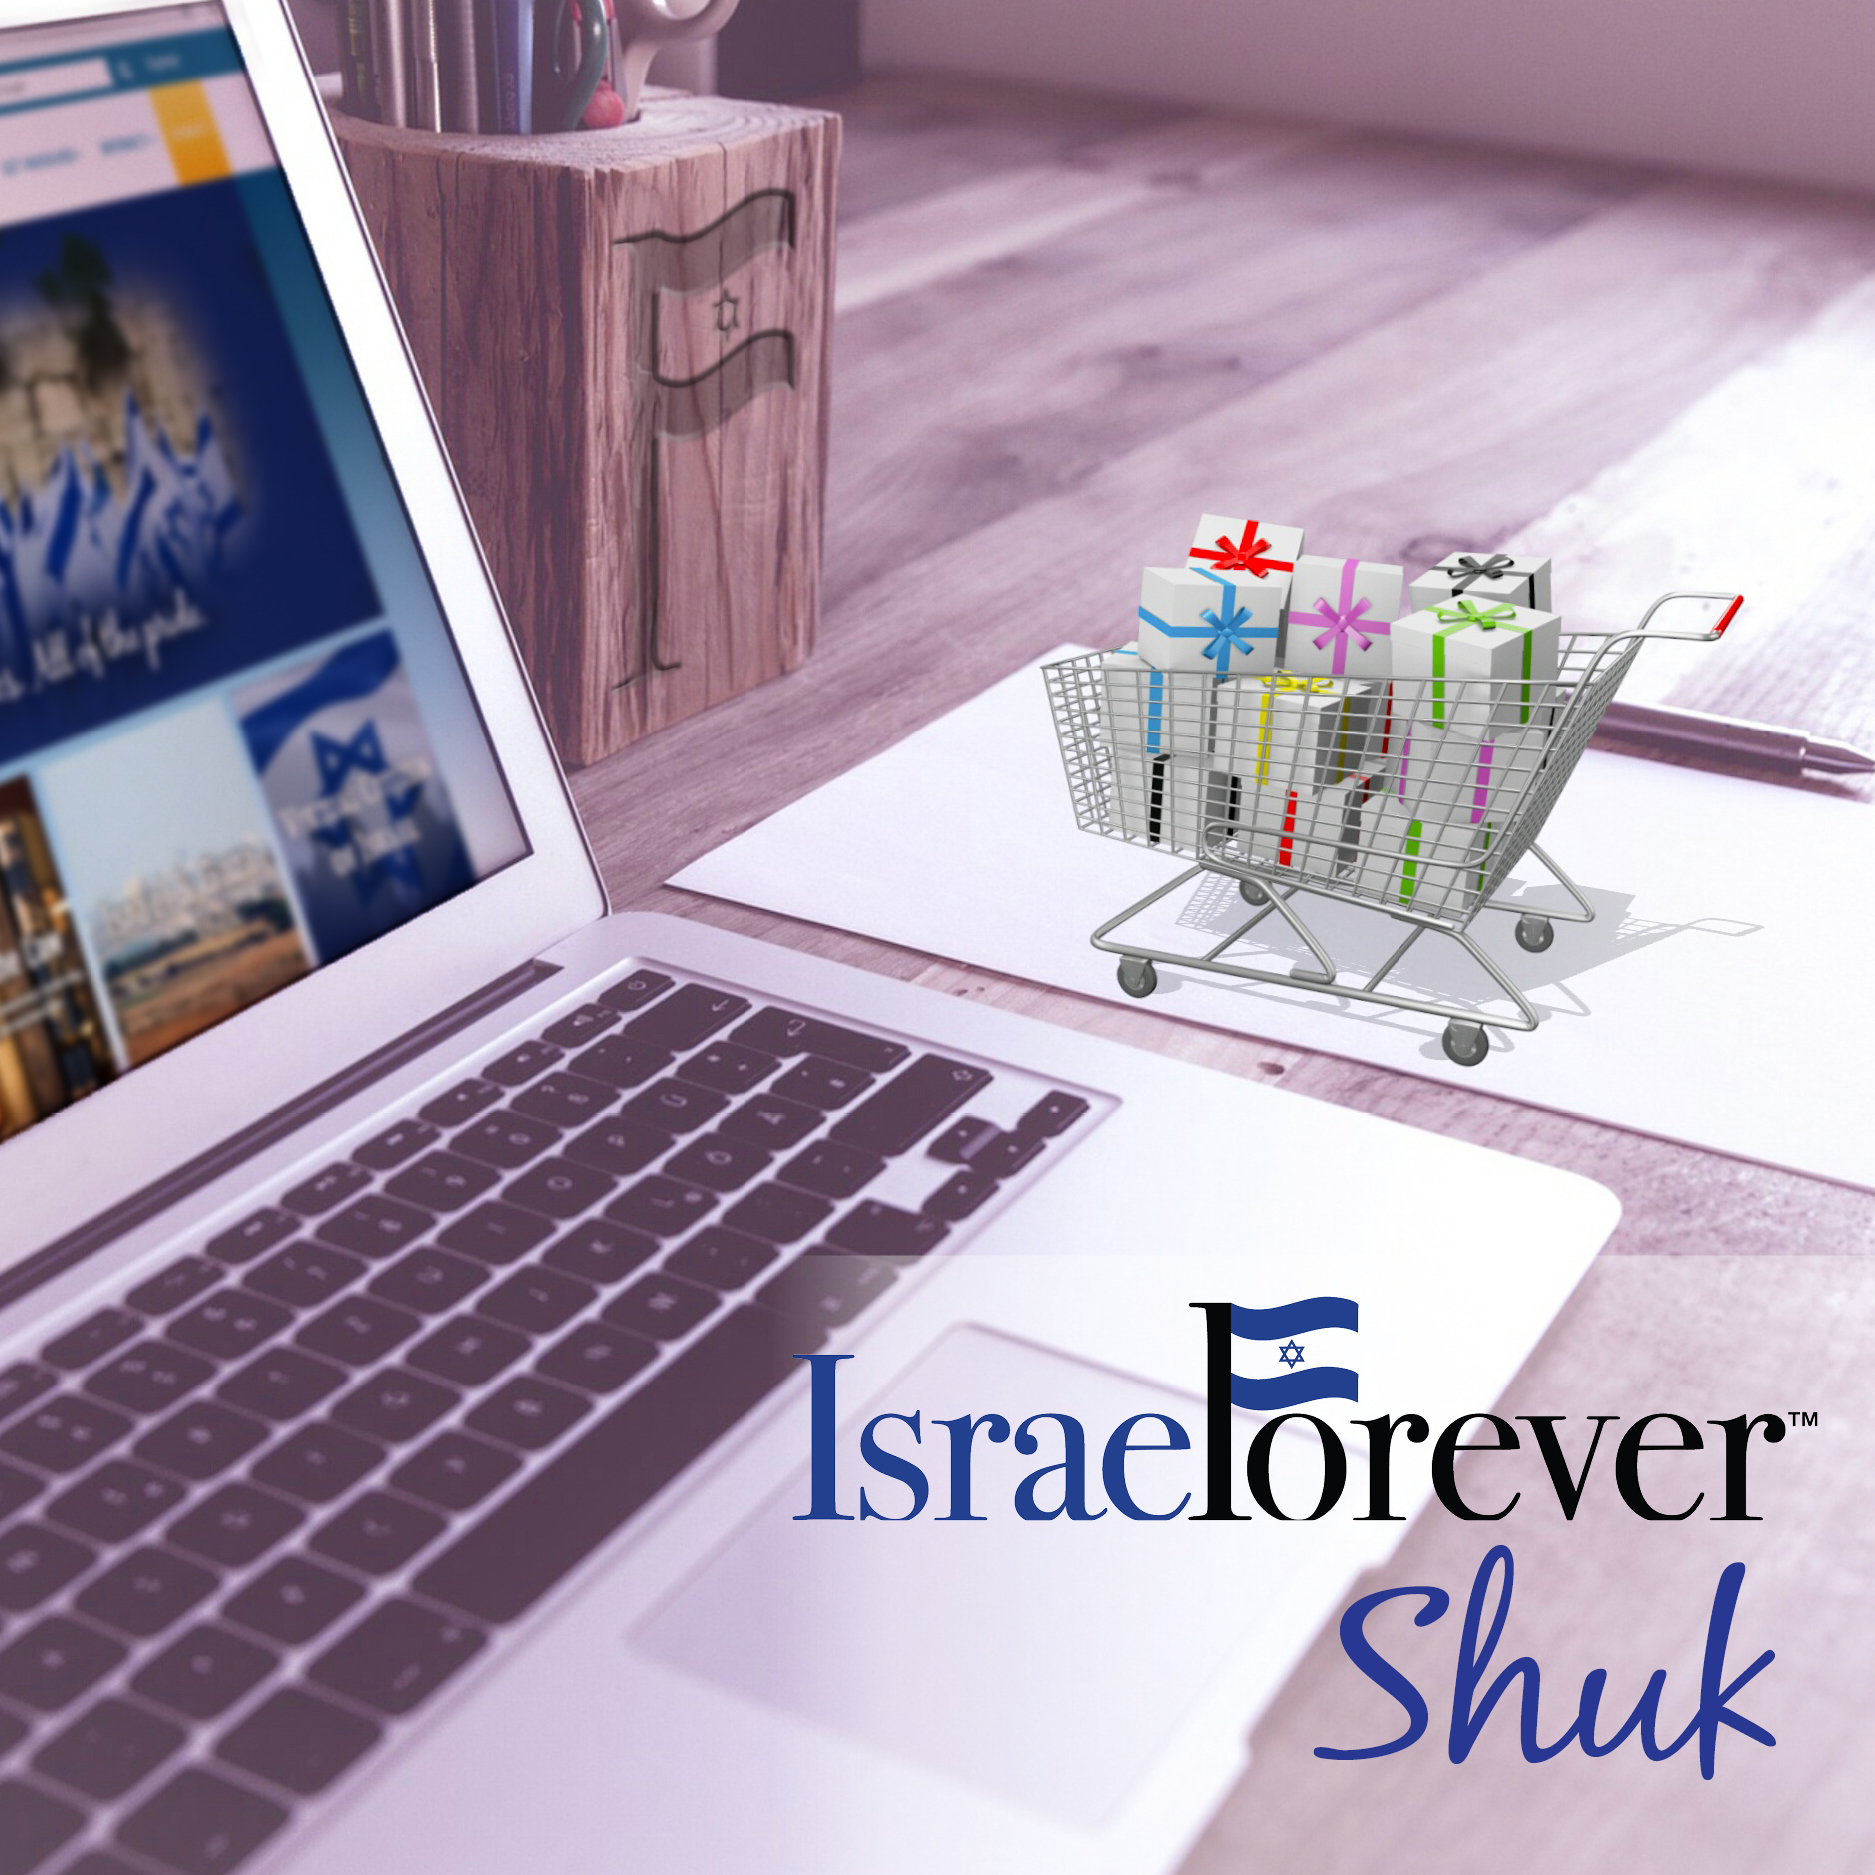 Israel Forever Shuk